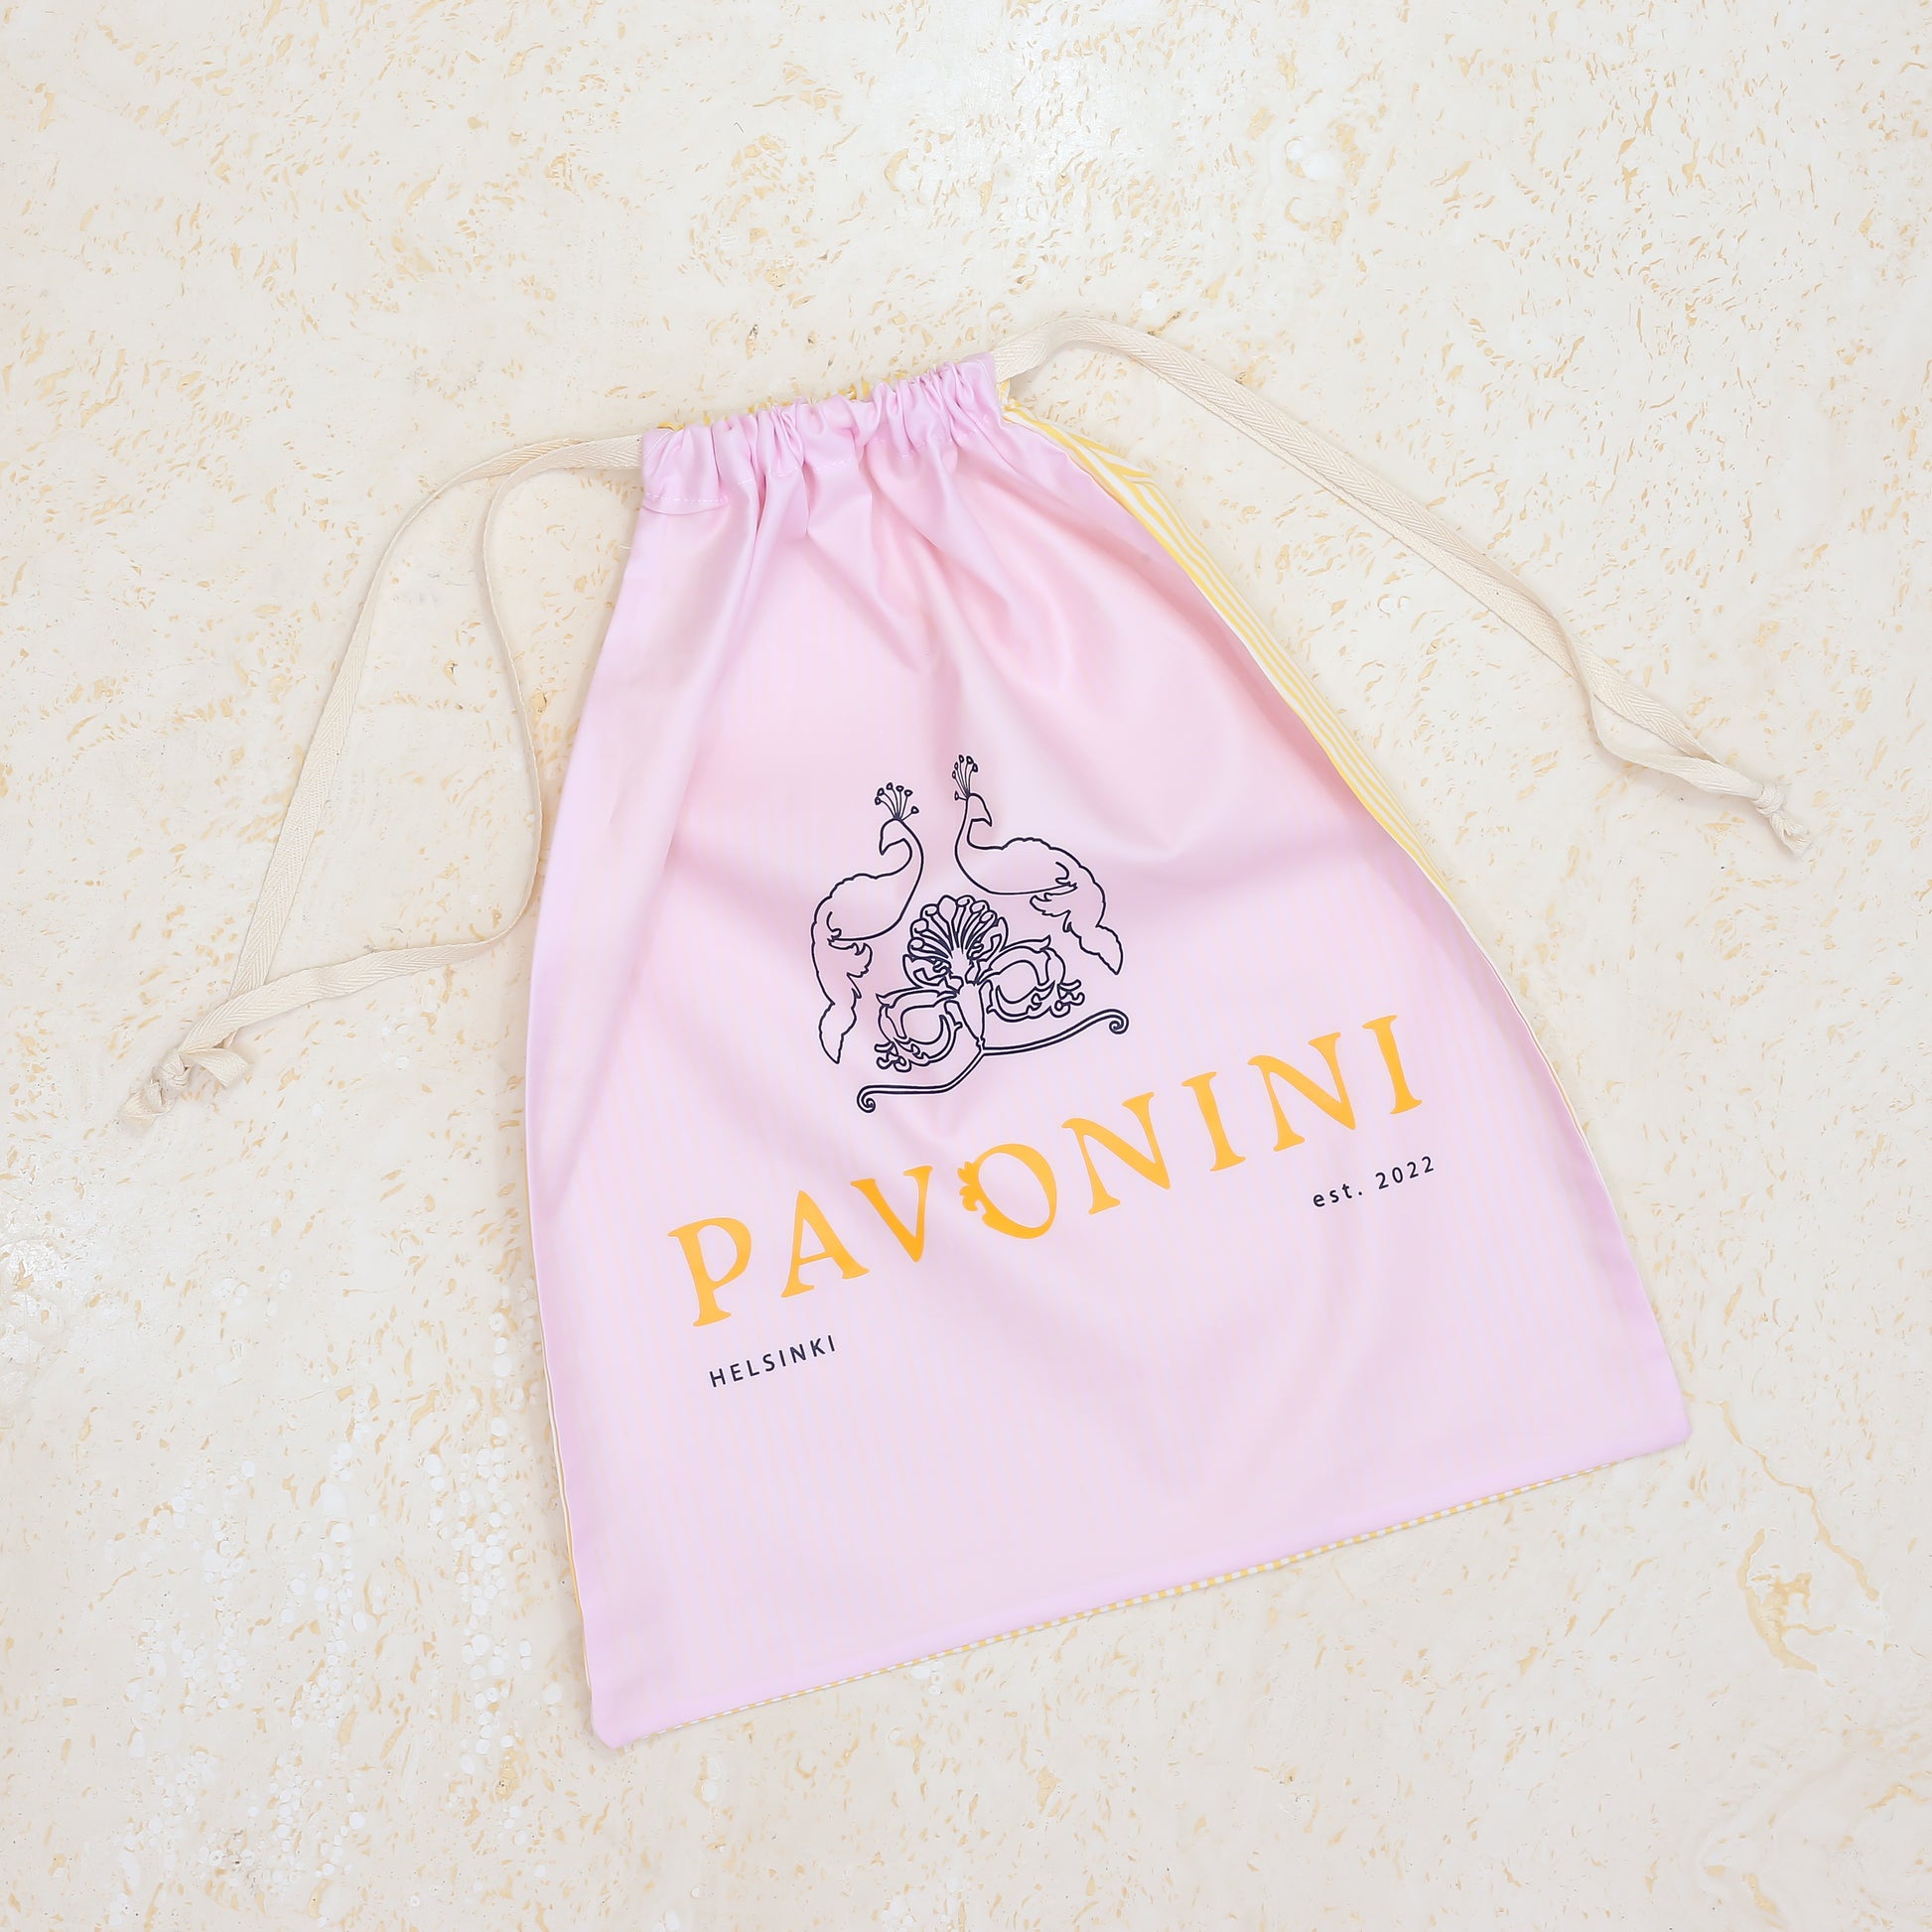 Signature Cotton Travel Bag-Unisex Boxershorts-The PAVONINI